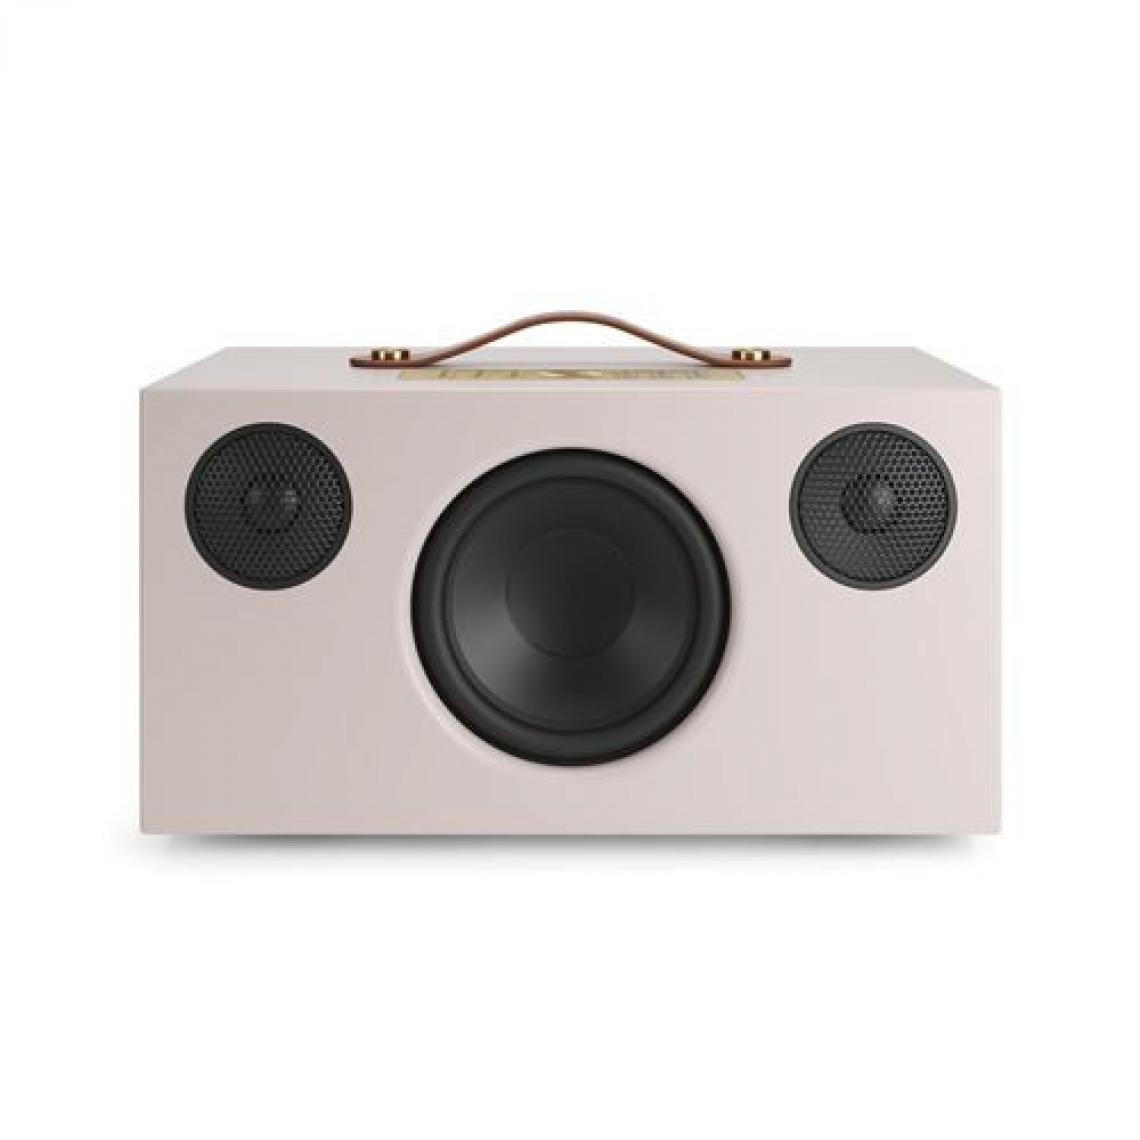 Audio Pro - Enceinte sans fil Bluetooth Audio Pro C10 MKII Edition limitée Beige sable - Enceintes Hifi